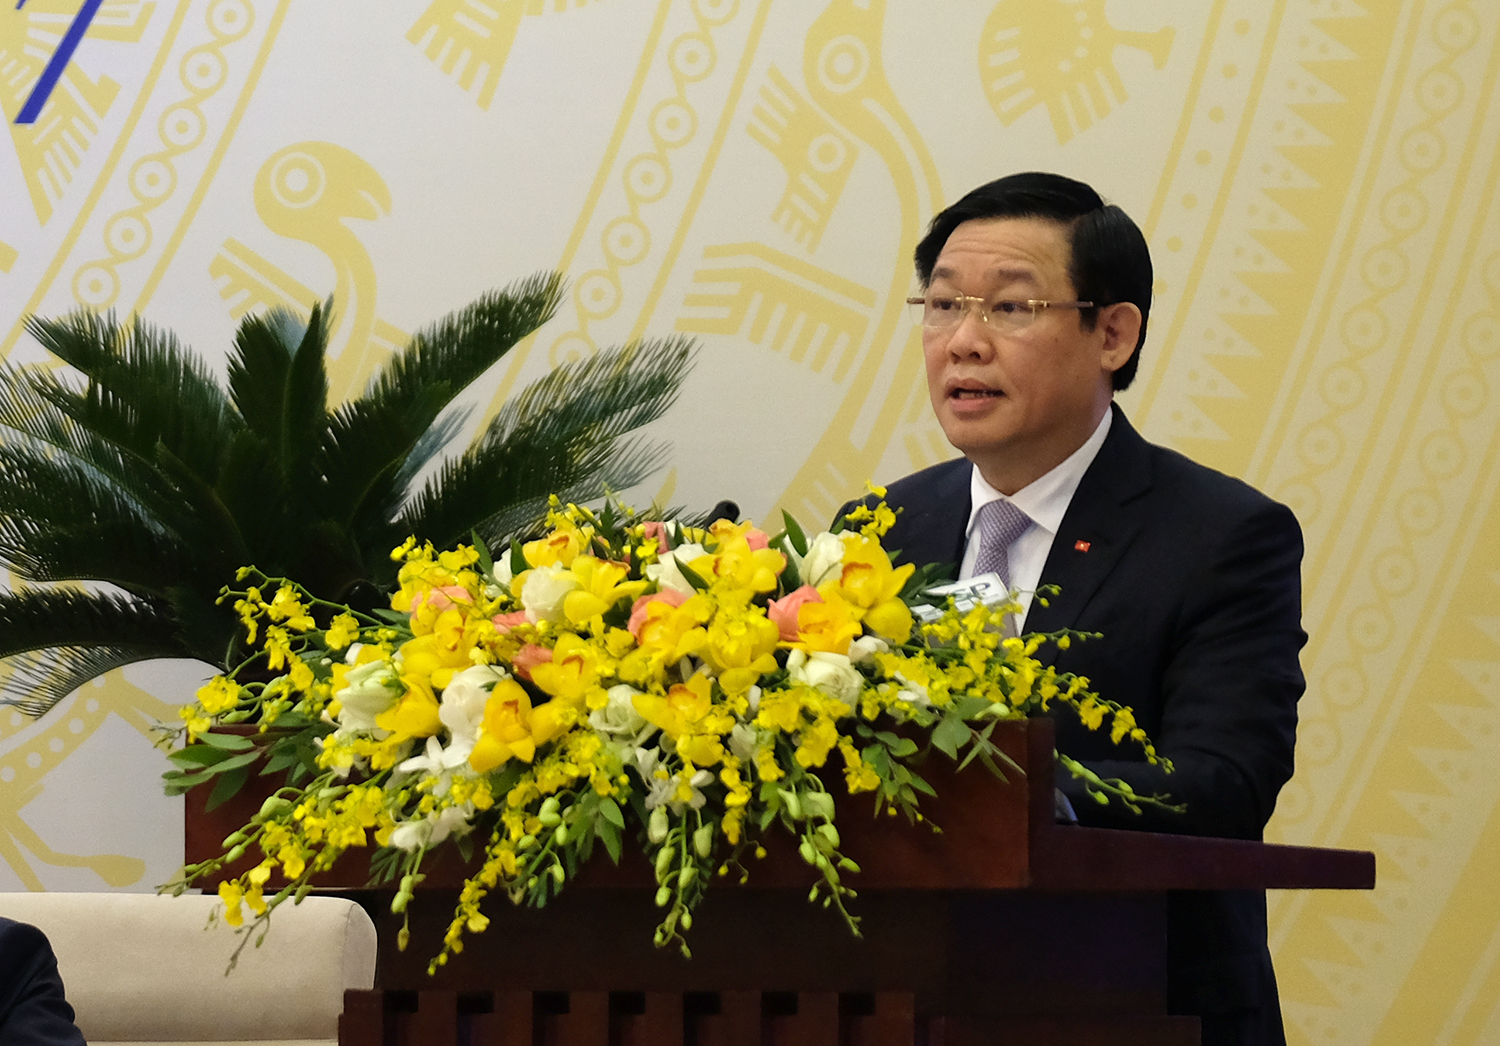 Phó Thủ tướng Vương Đình Huệ giới thiệu dự thảo Nghị quyết của Chính phủ về nhiệm vụ, giải pháp chủ yếu chỉ đạo, điều hành kế hoạch phát triển kinh tế - xã hội và dự toán ngân sách năm 2018 (Ảnh VGP/Quang Hiếu)